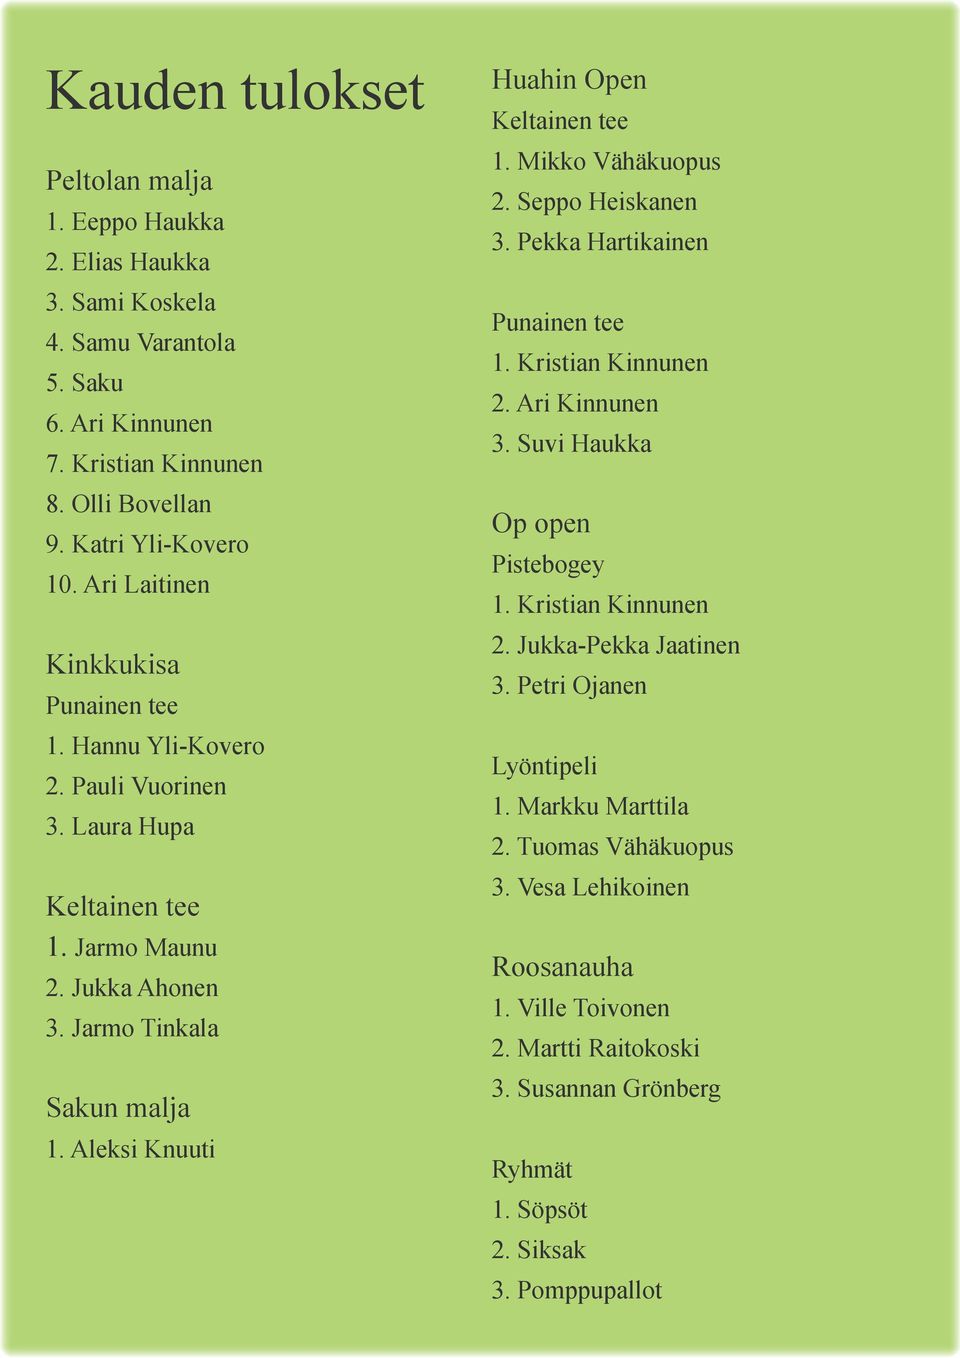 Aleksi Knuuti Huahin Open 1. Mikko Vähäkuopus 2. Seppo Heiskanen 3. Pekka Hartikainen 1. Kristian Kinnunen 2. Ari Kinnunen 3. Suvi Haukka Op open Pistebogey 1. Kristian Kinnunen 2. Jukka-Pekka Jaatinen 3.